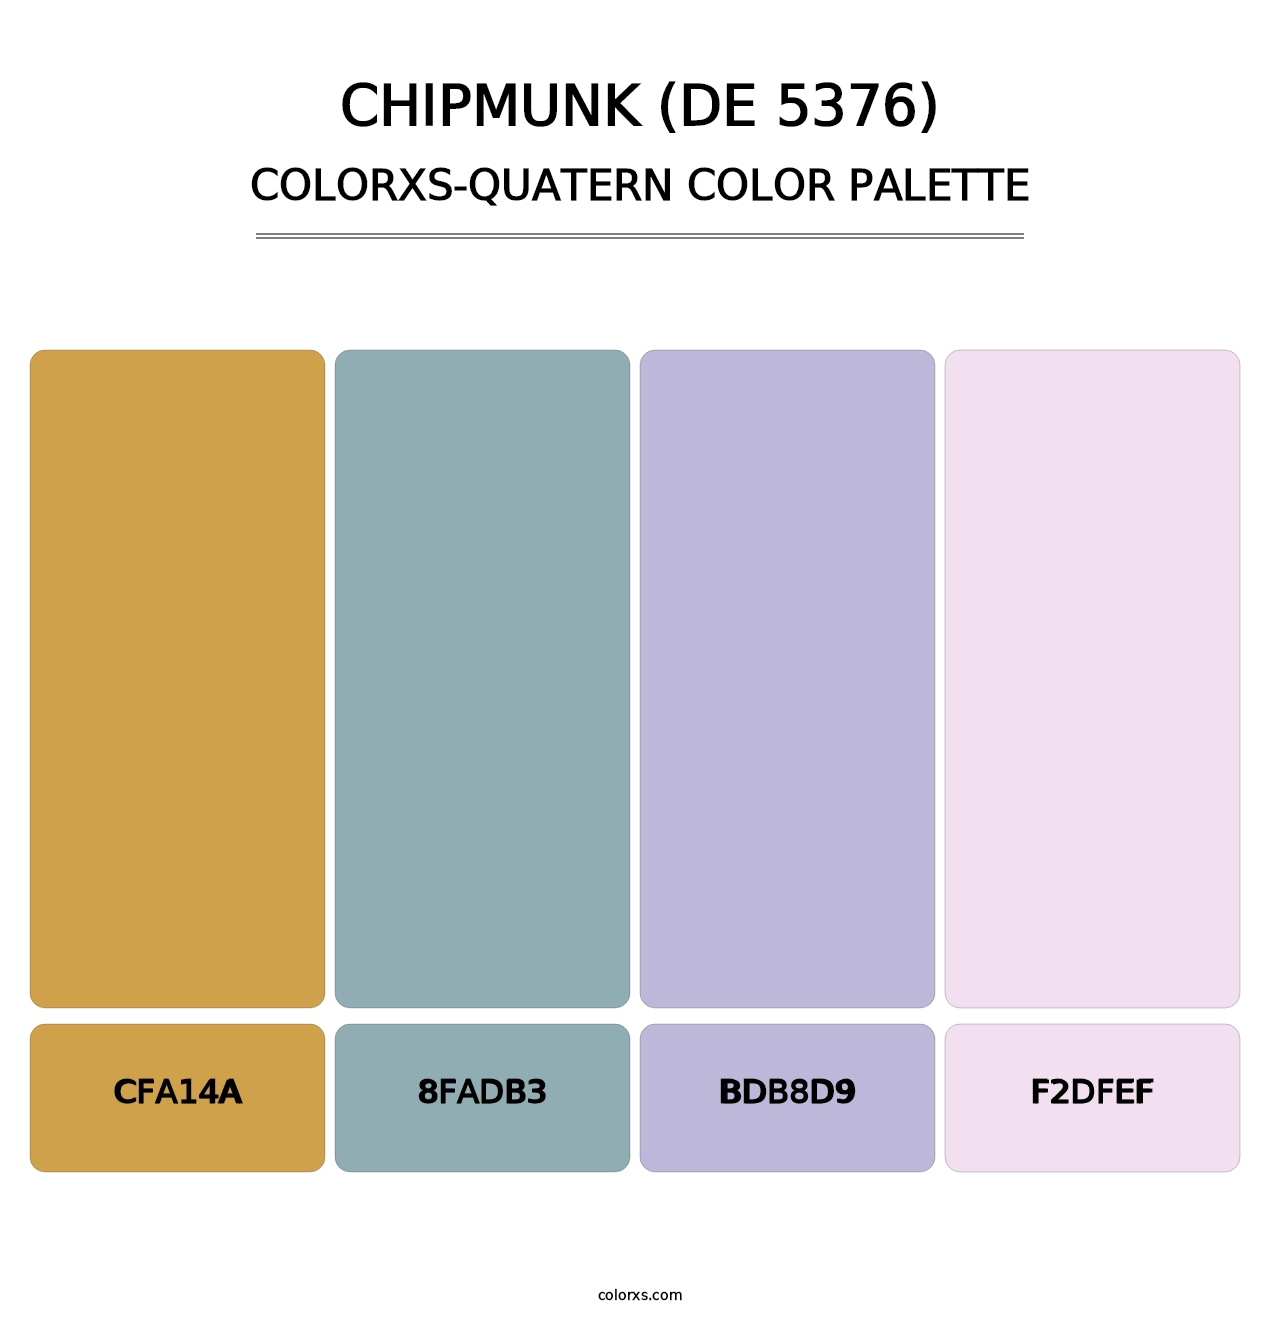 Chipmunk (DE 5376) - Colorxs Quatern Palette